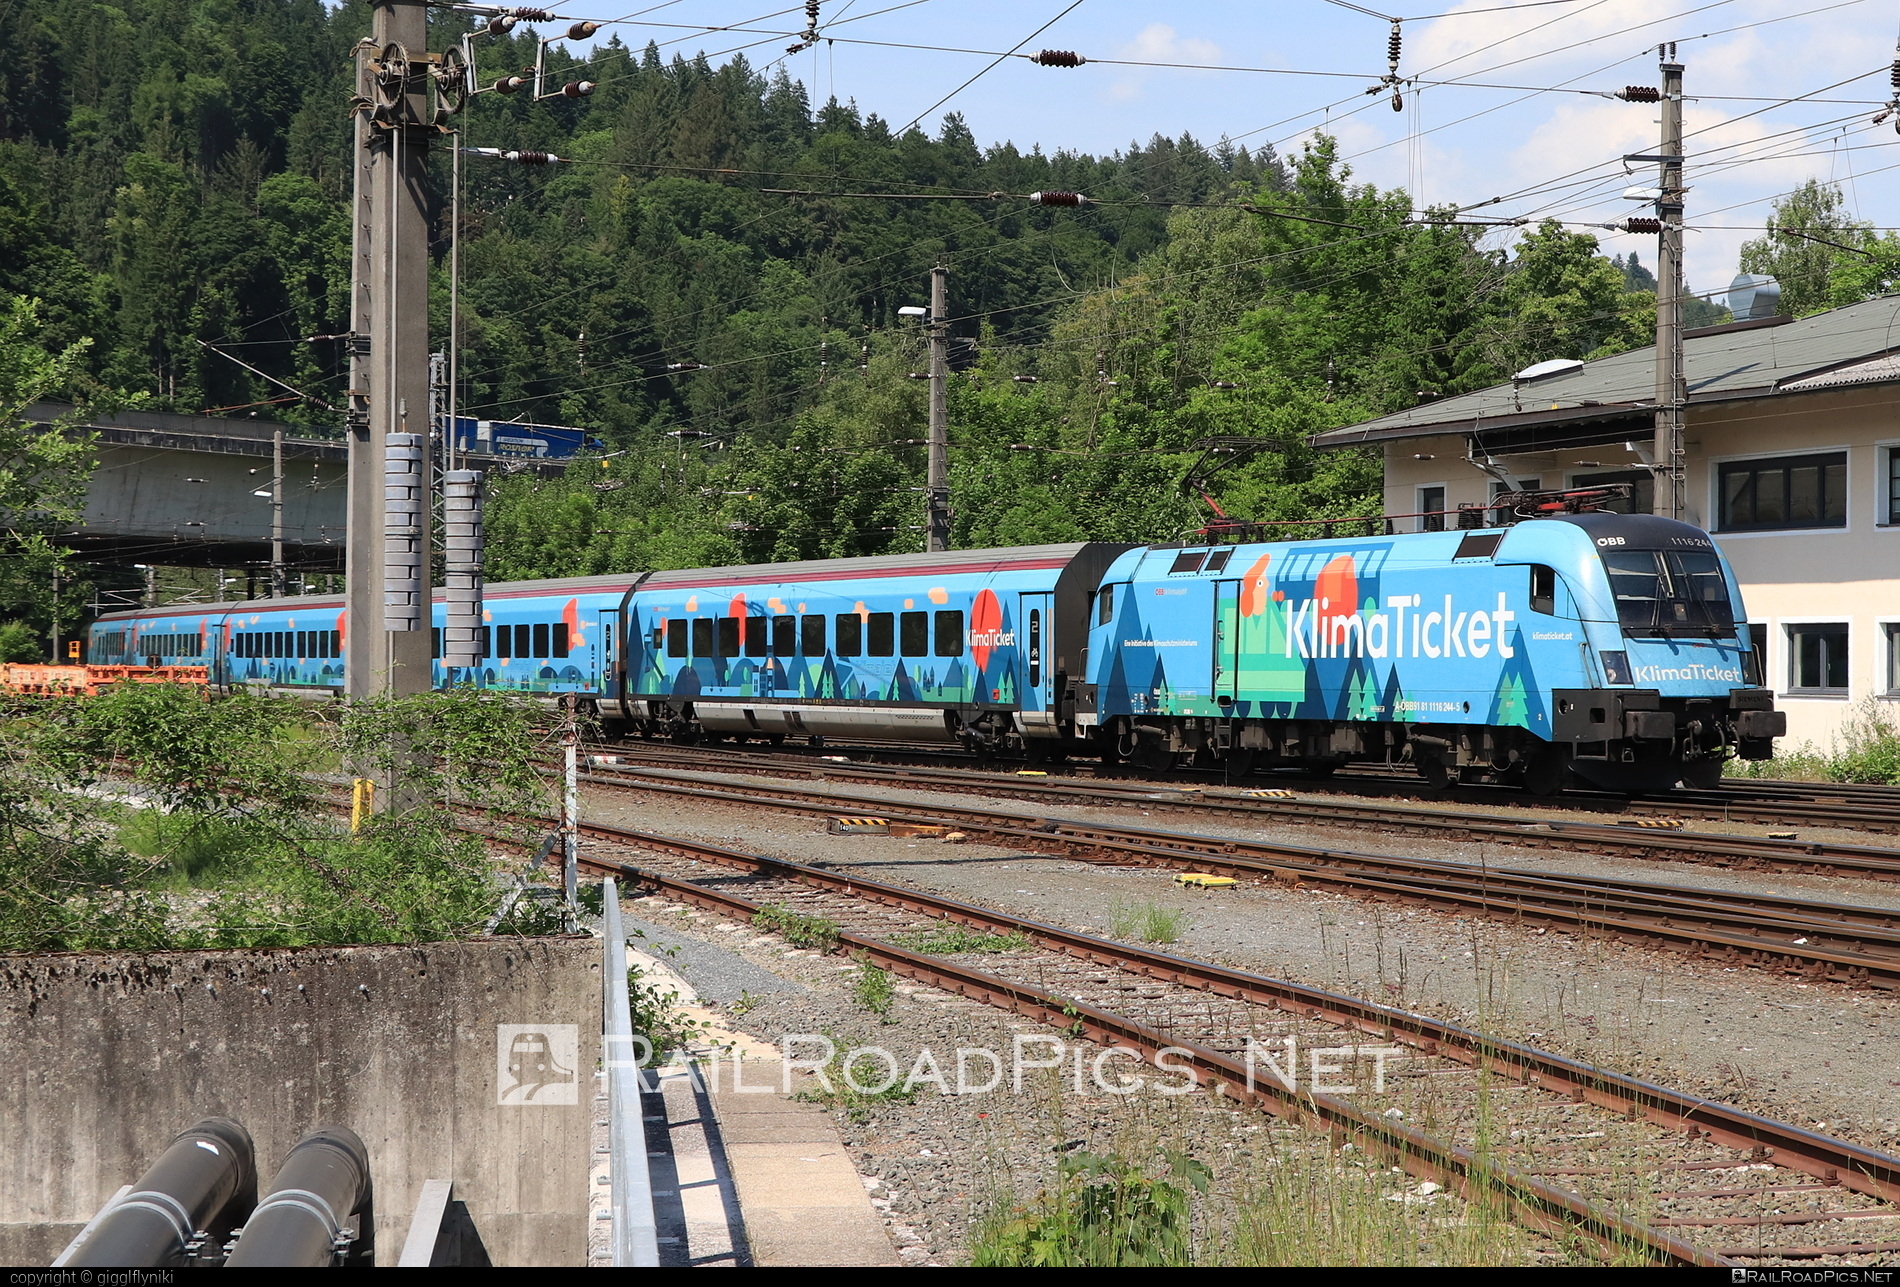 Siemens ES 64 U2 - 1116 244 operated by Österreichische Bundesbahnen #es64 #es64u2 #eurosprinter #obb #osterreichischebundesbahnen #siemens #siemensEs64 #siemensEs64u2 #siemenstaurus #taurus #tauruslocomotive